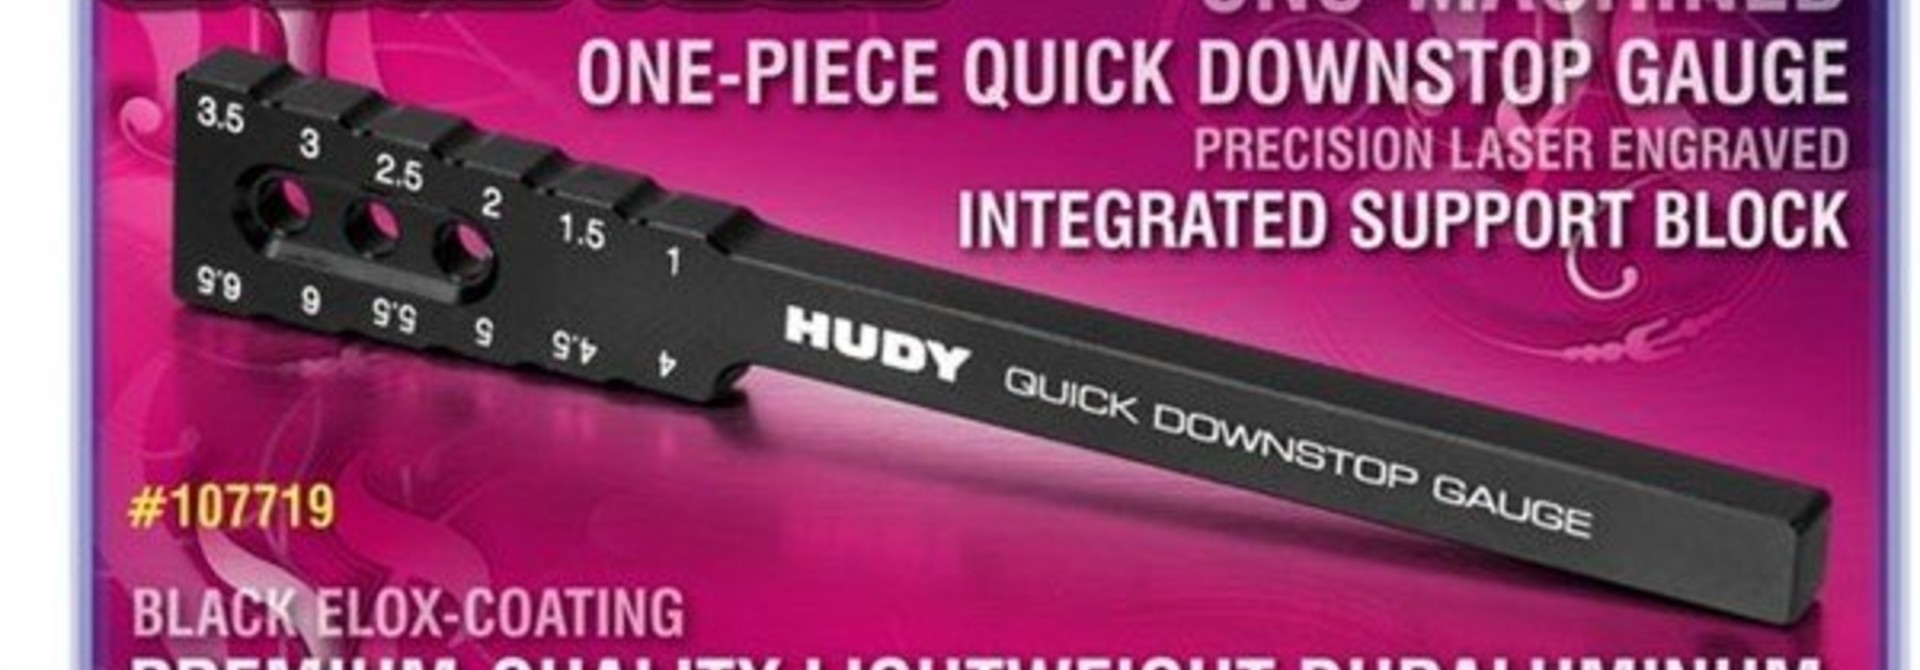 Quick Downstop Gauge Tool 1.0 6.5Mm. H107719